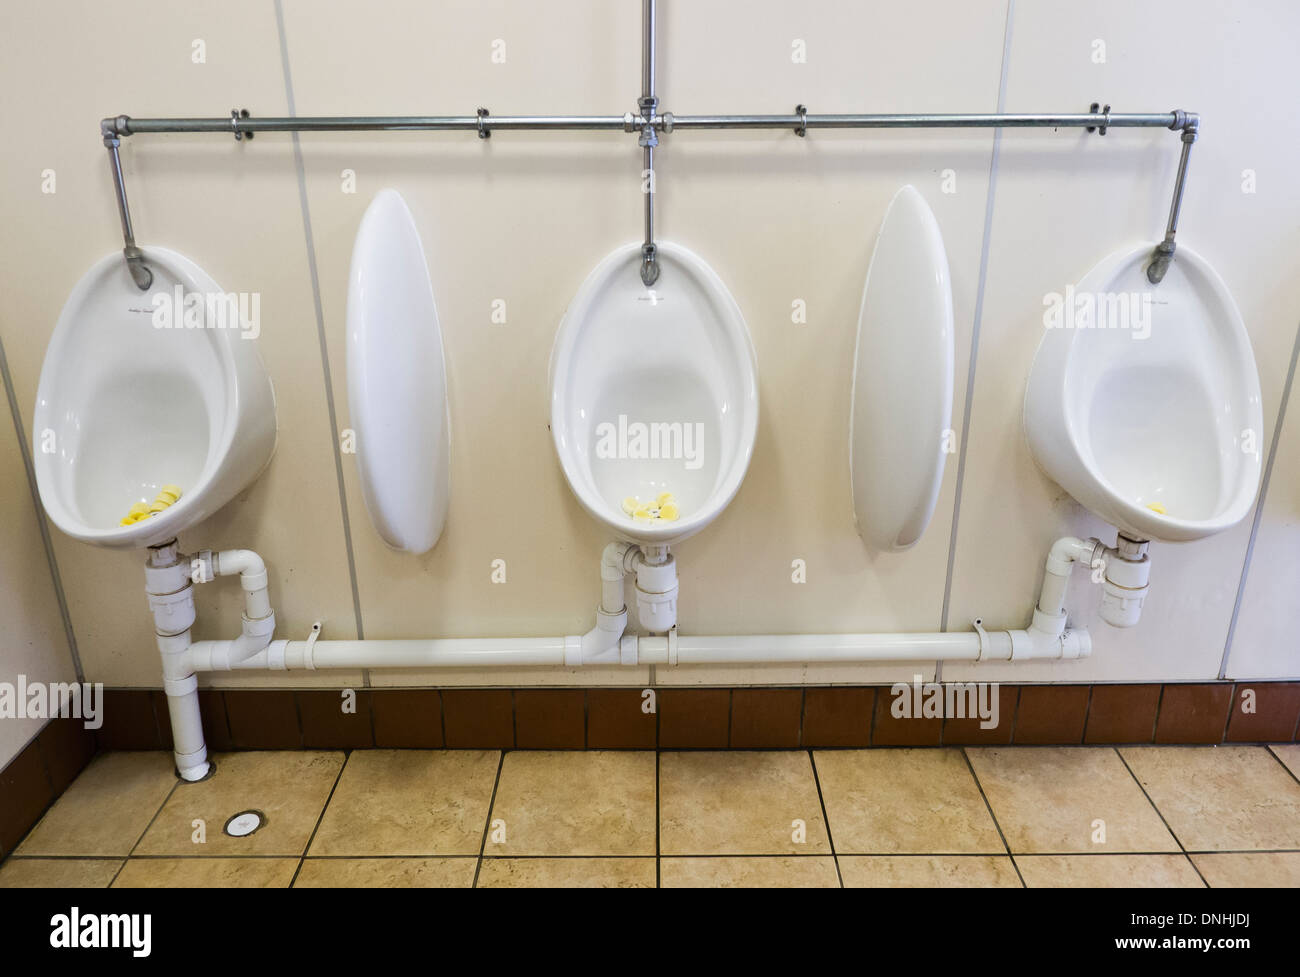 Urinale in einer öffentlichen Toilette Herren. Stockfoto